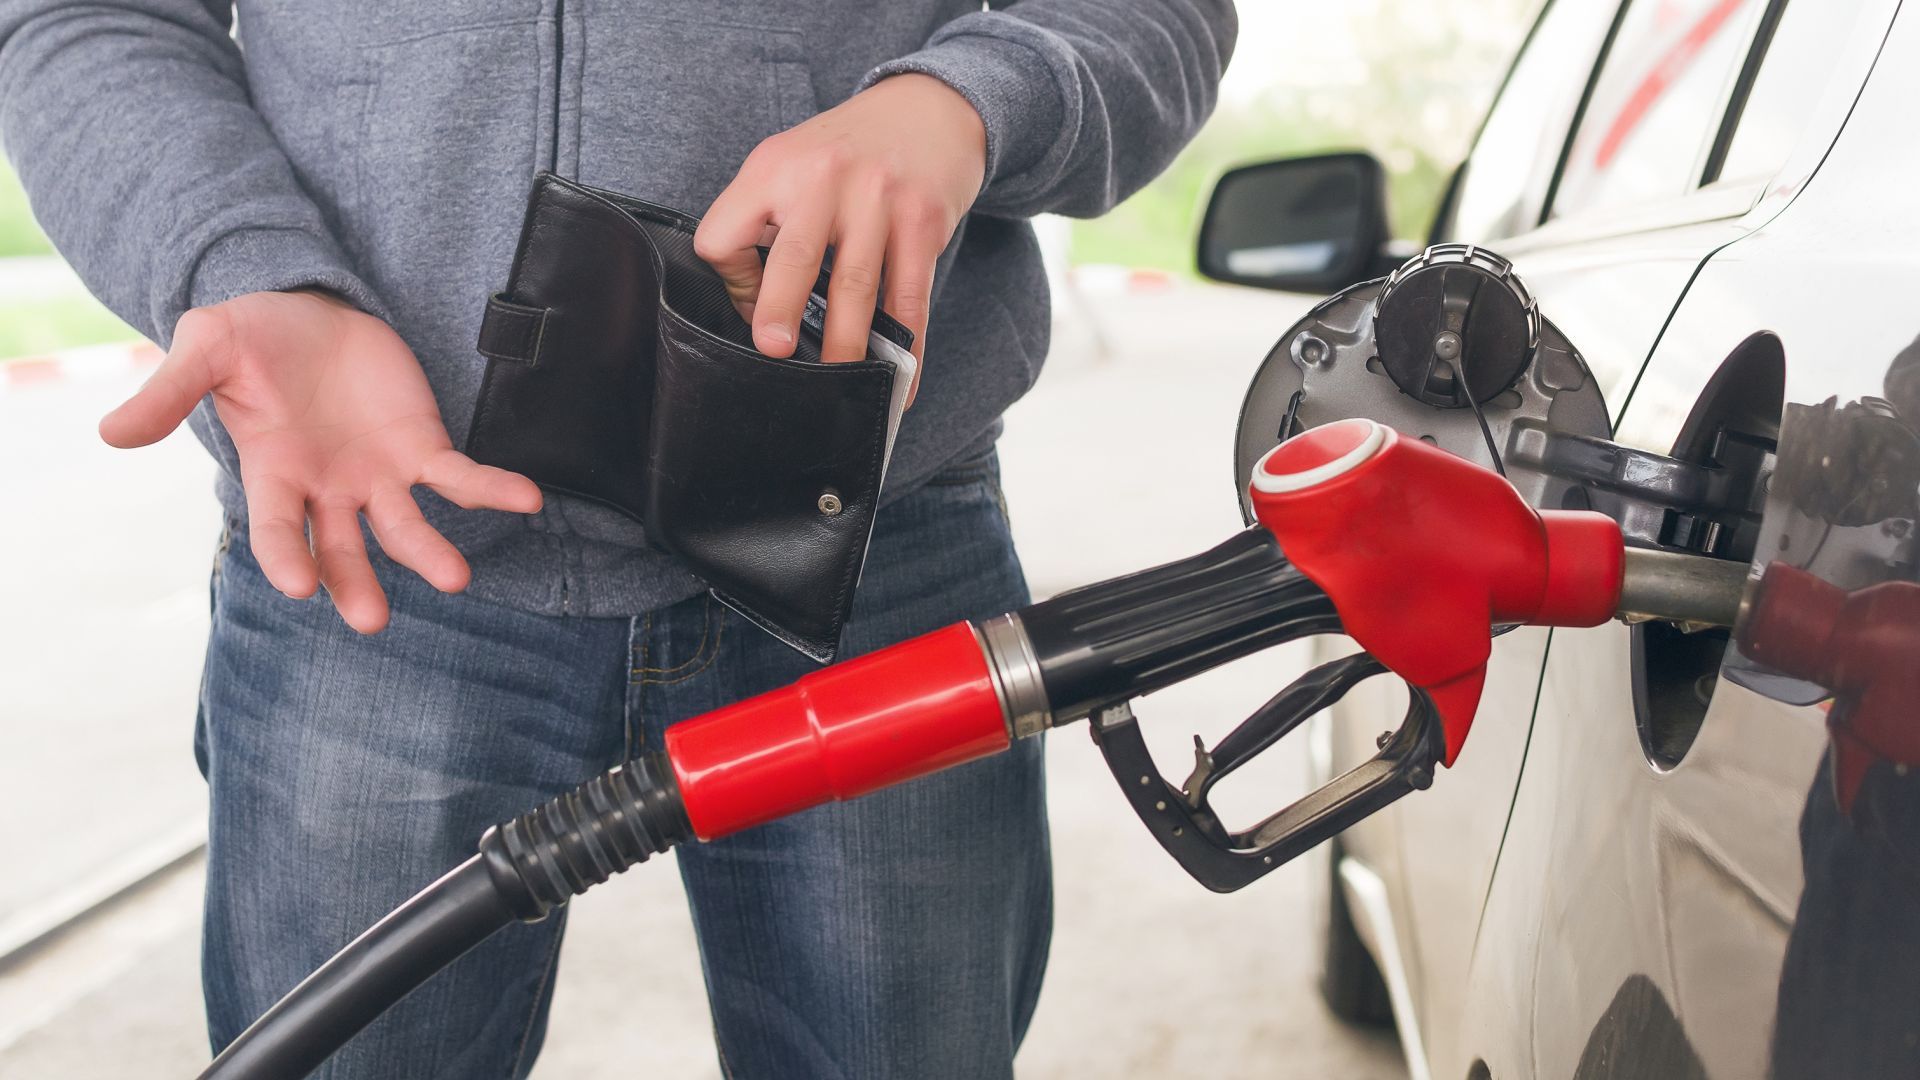 Средната цена на най-масовия бензин у нас падна с 19 стотинки